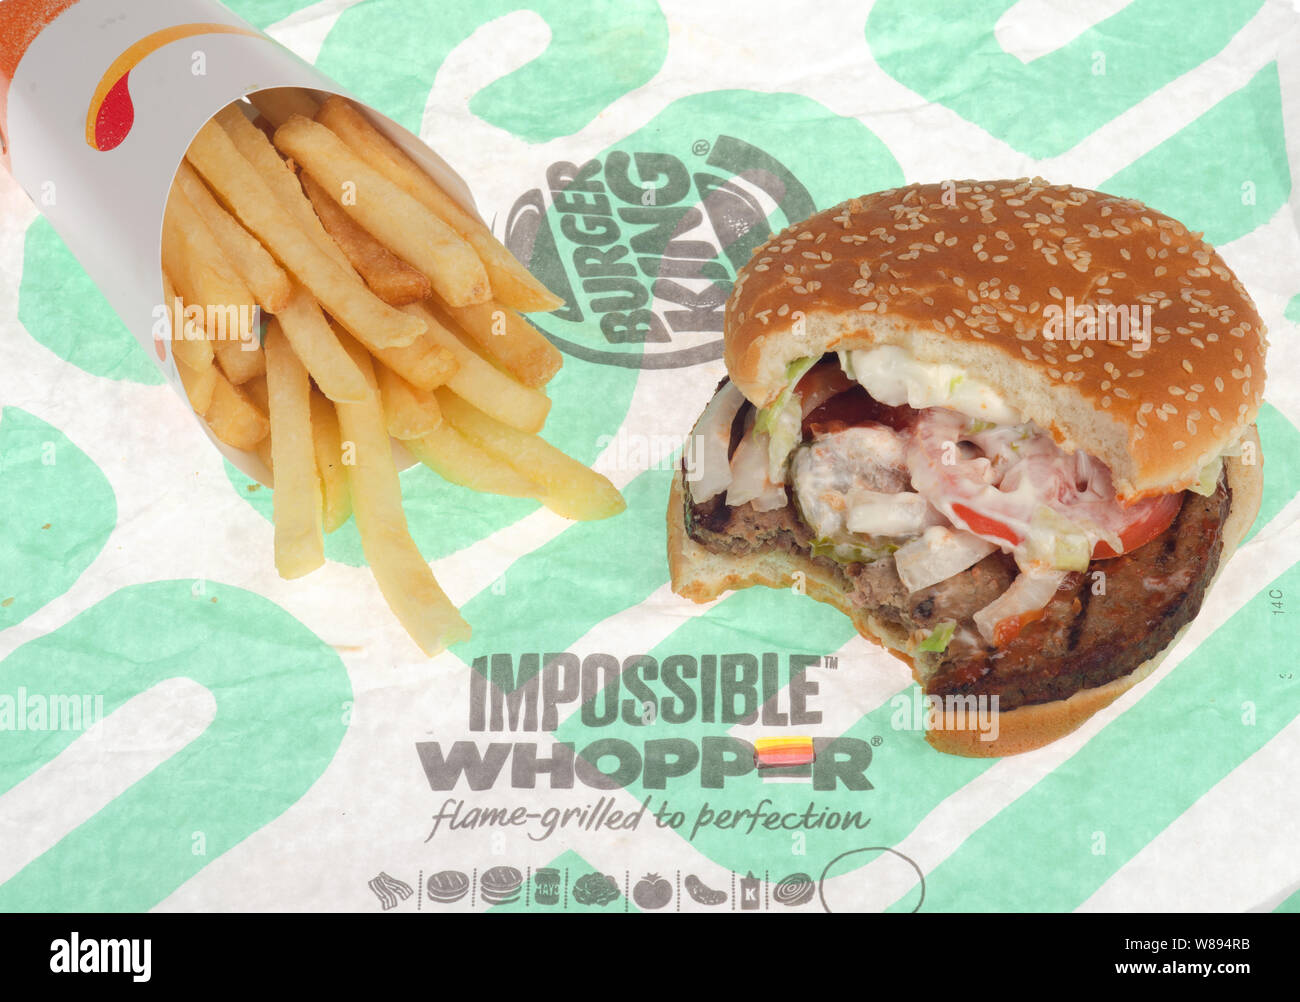 Unmöglich Whopper von Burger King mit einem Bissen genommen und Pommes frites auf der Verpackung. Vegetarische Lebensmittel in den USA Veröffentlicht am August 08, 2019 Stockfoto